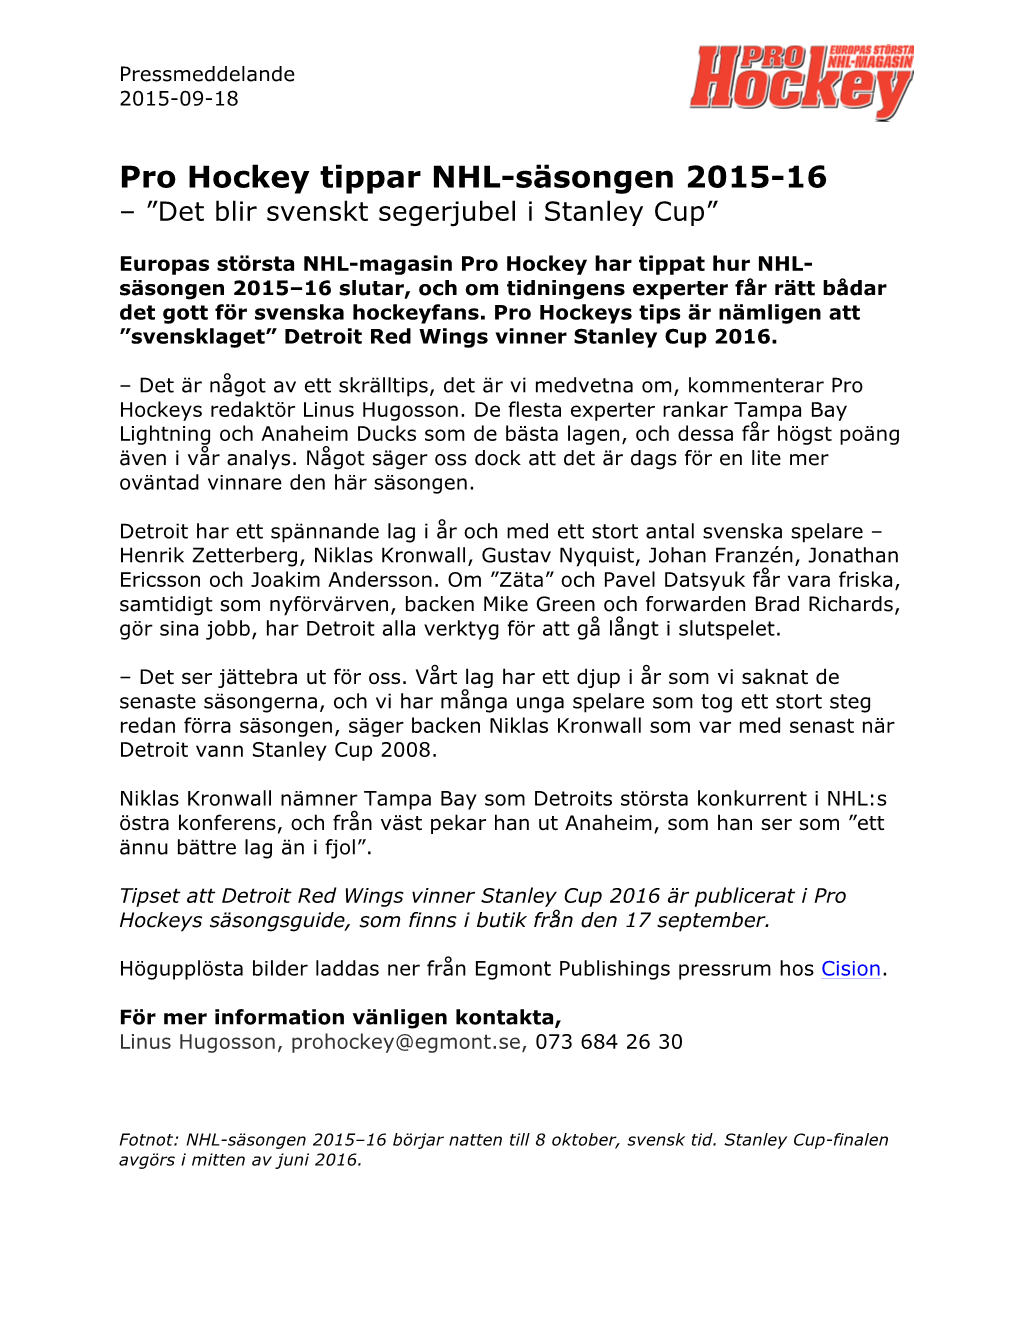 Pro Hockey Tippar NHL-Säsongen 2015-16 – ”Det Blir Svenskt Segerjubel I Stanley Cup”